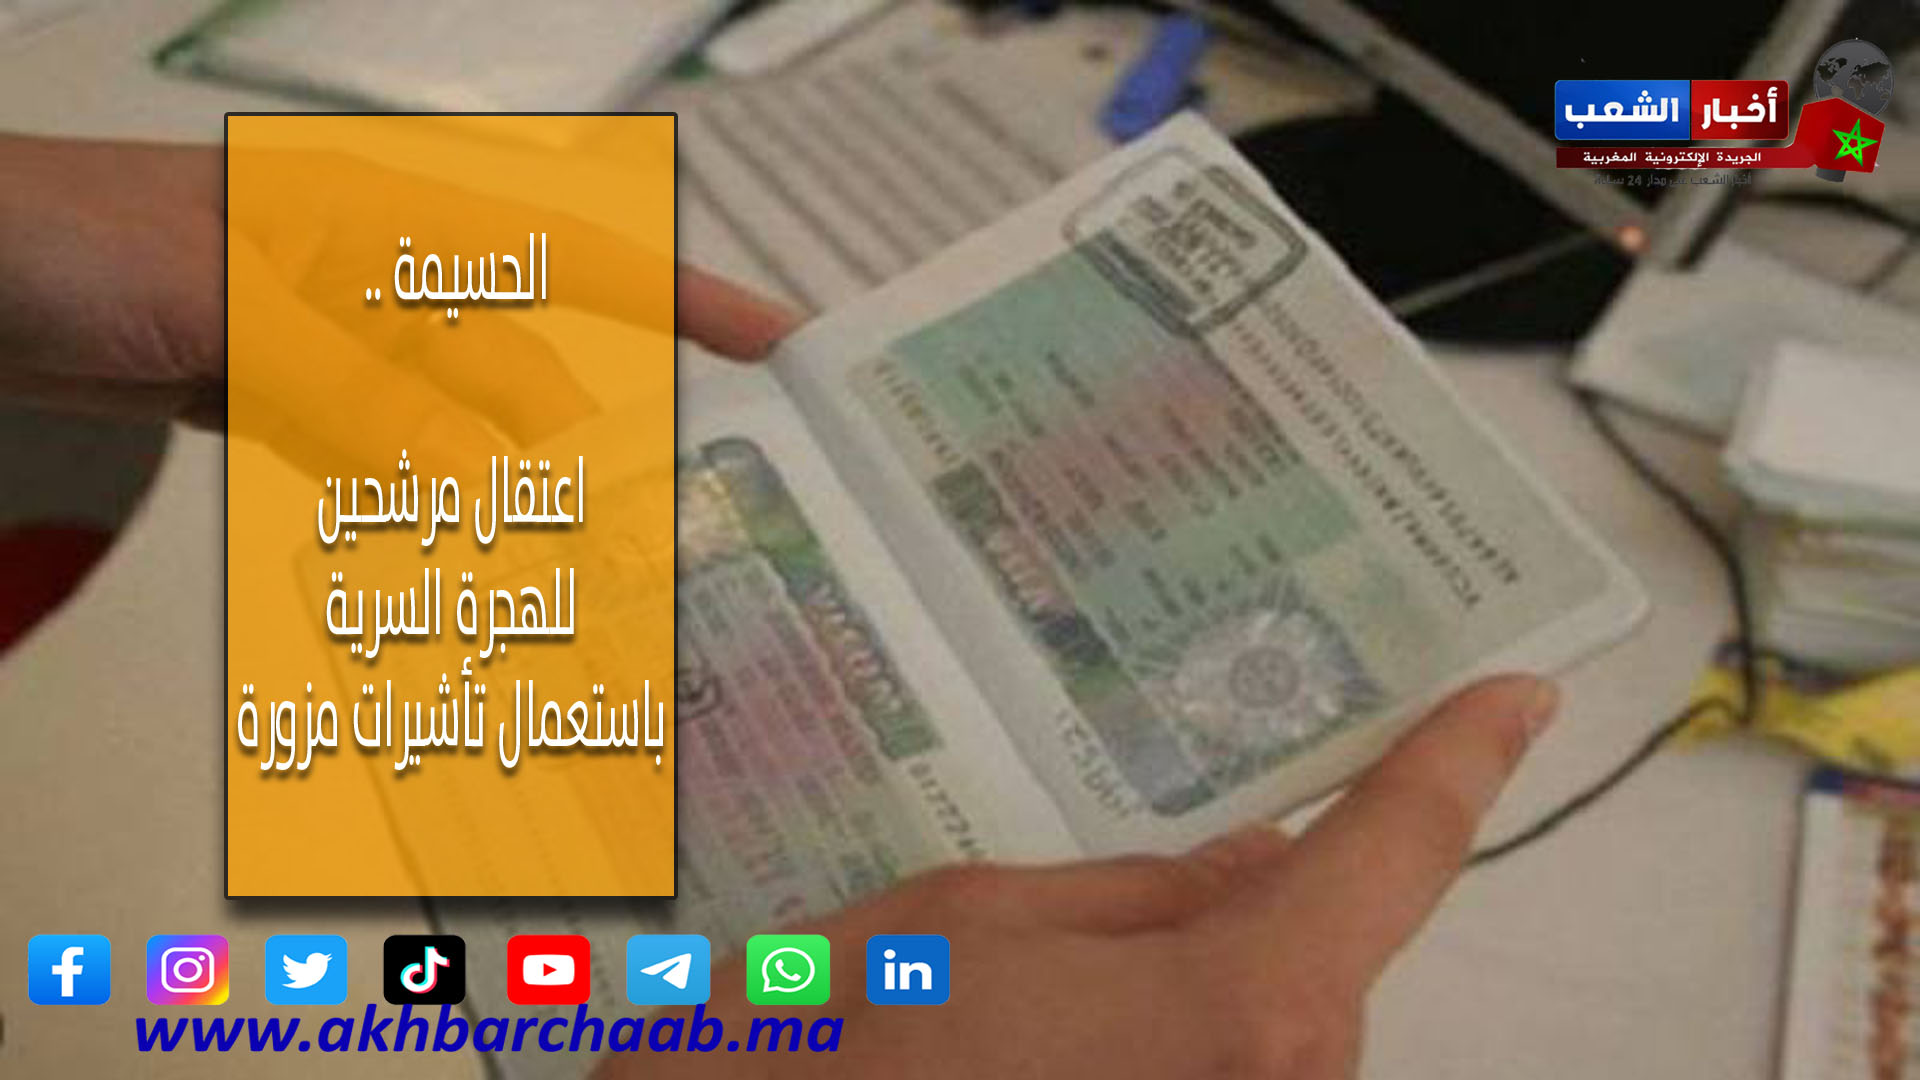 الحسيمة .. اعتقال مرشحين للهجرة السرية باستعمال تأشيرات مزورة